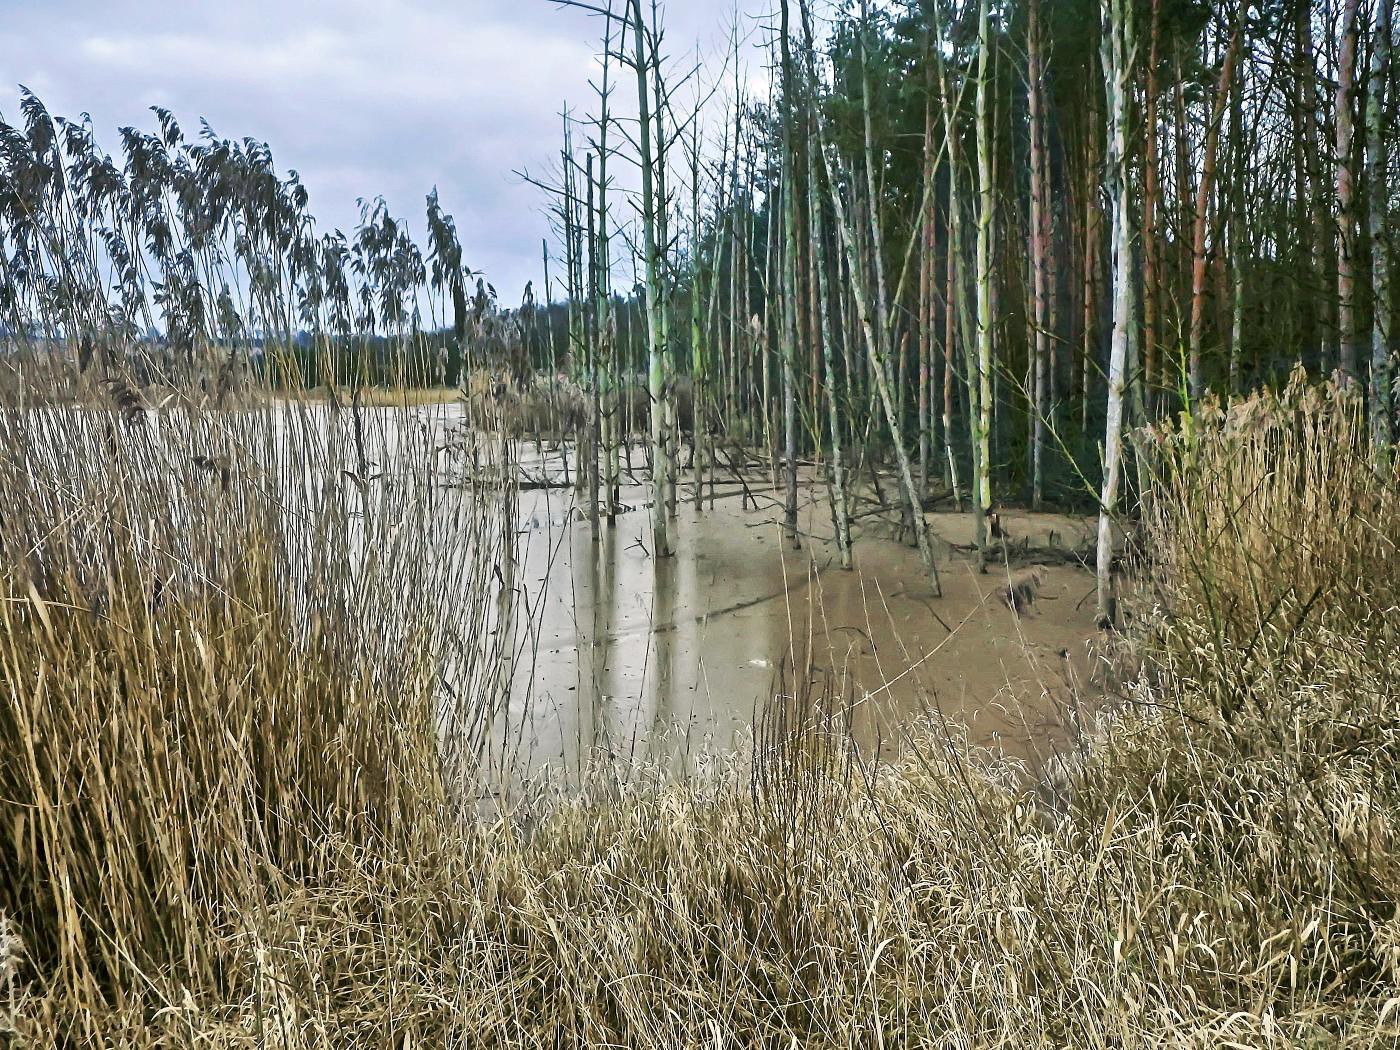 Teich durch Abbau entstanden